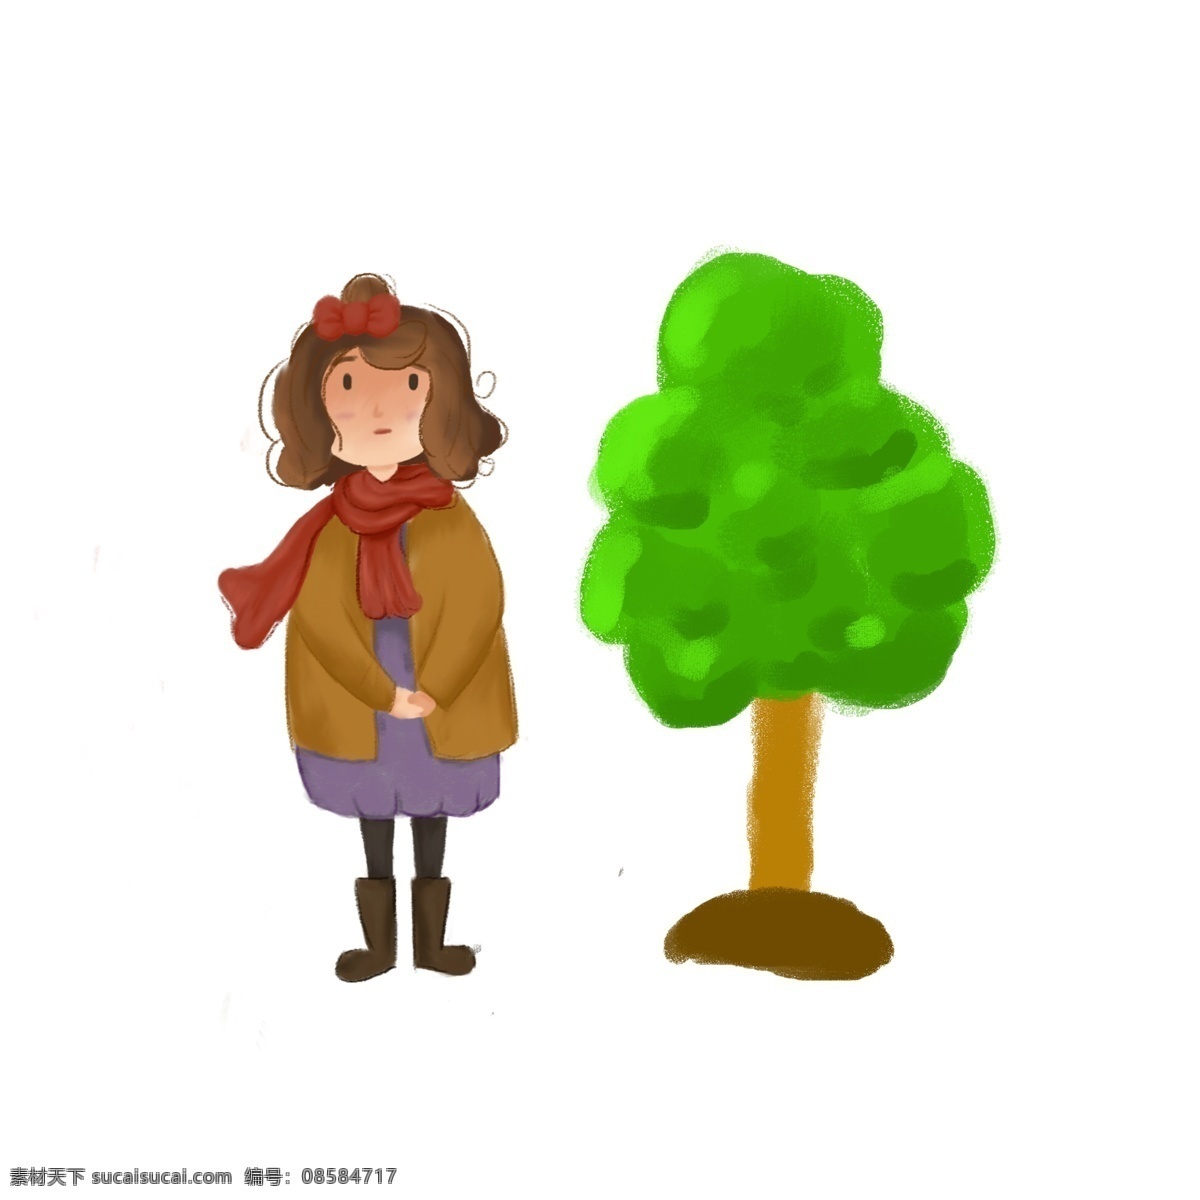 植树 种树 卡通 人物 形象 植树节人物 人物形象 小朋友 扁平化 植树节 女孩子 学生 树木 活动